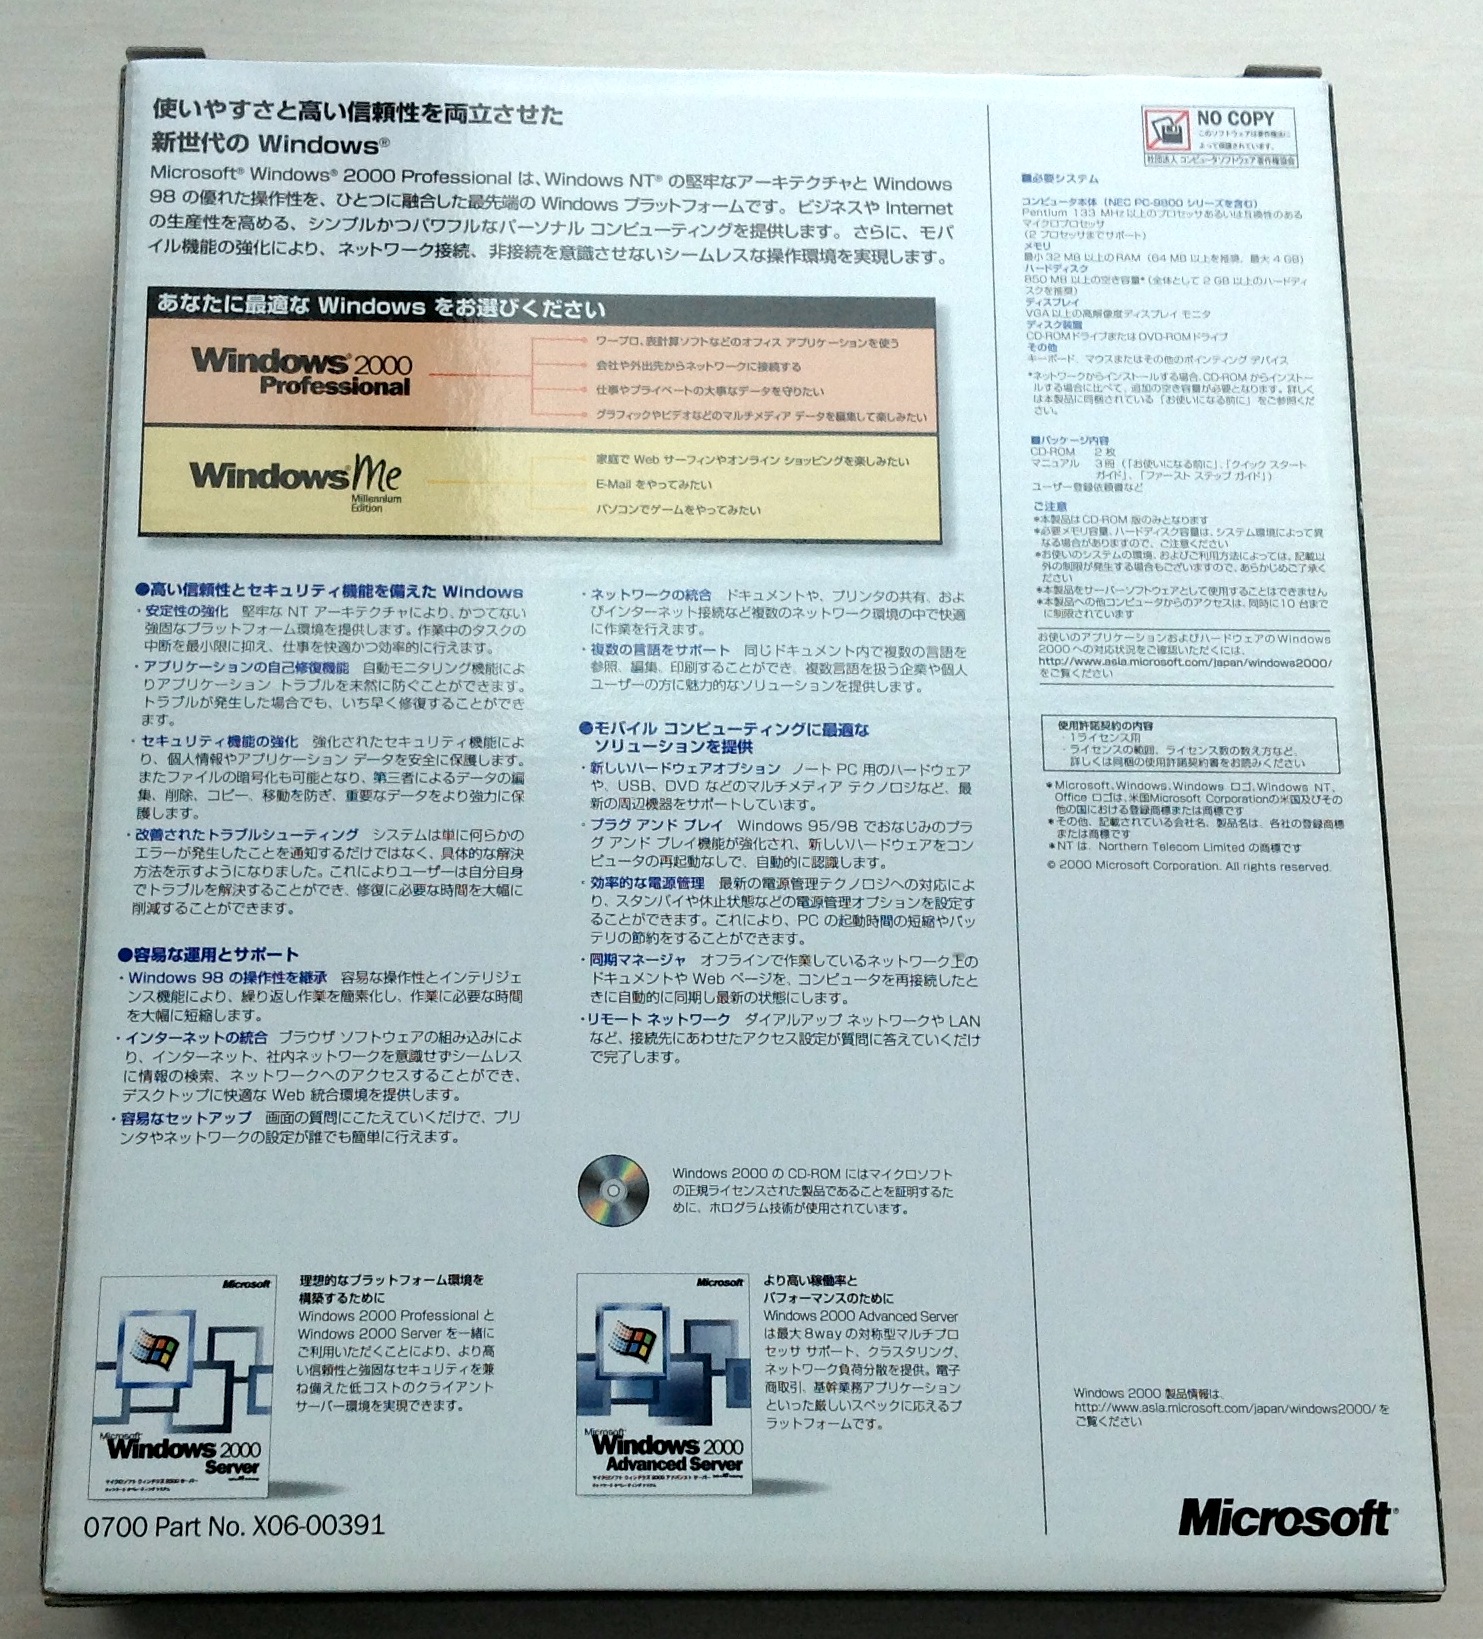 NT 系の堅牢性を世に知らしめた Windows  Professional の登場